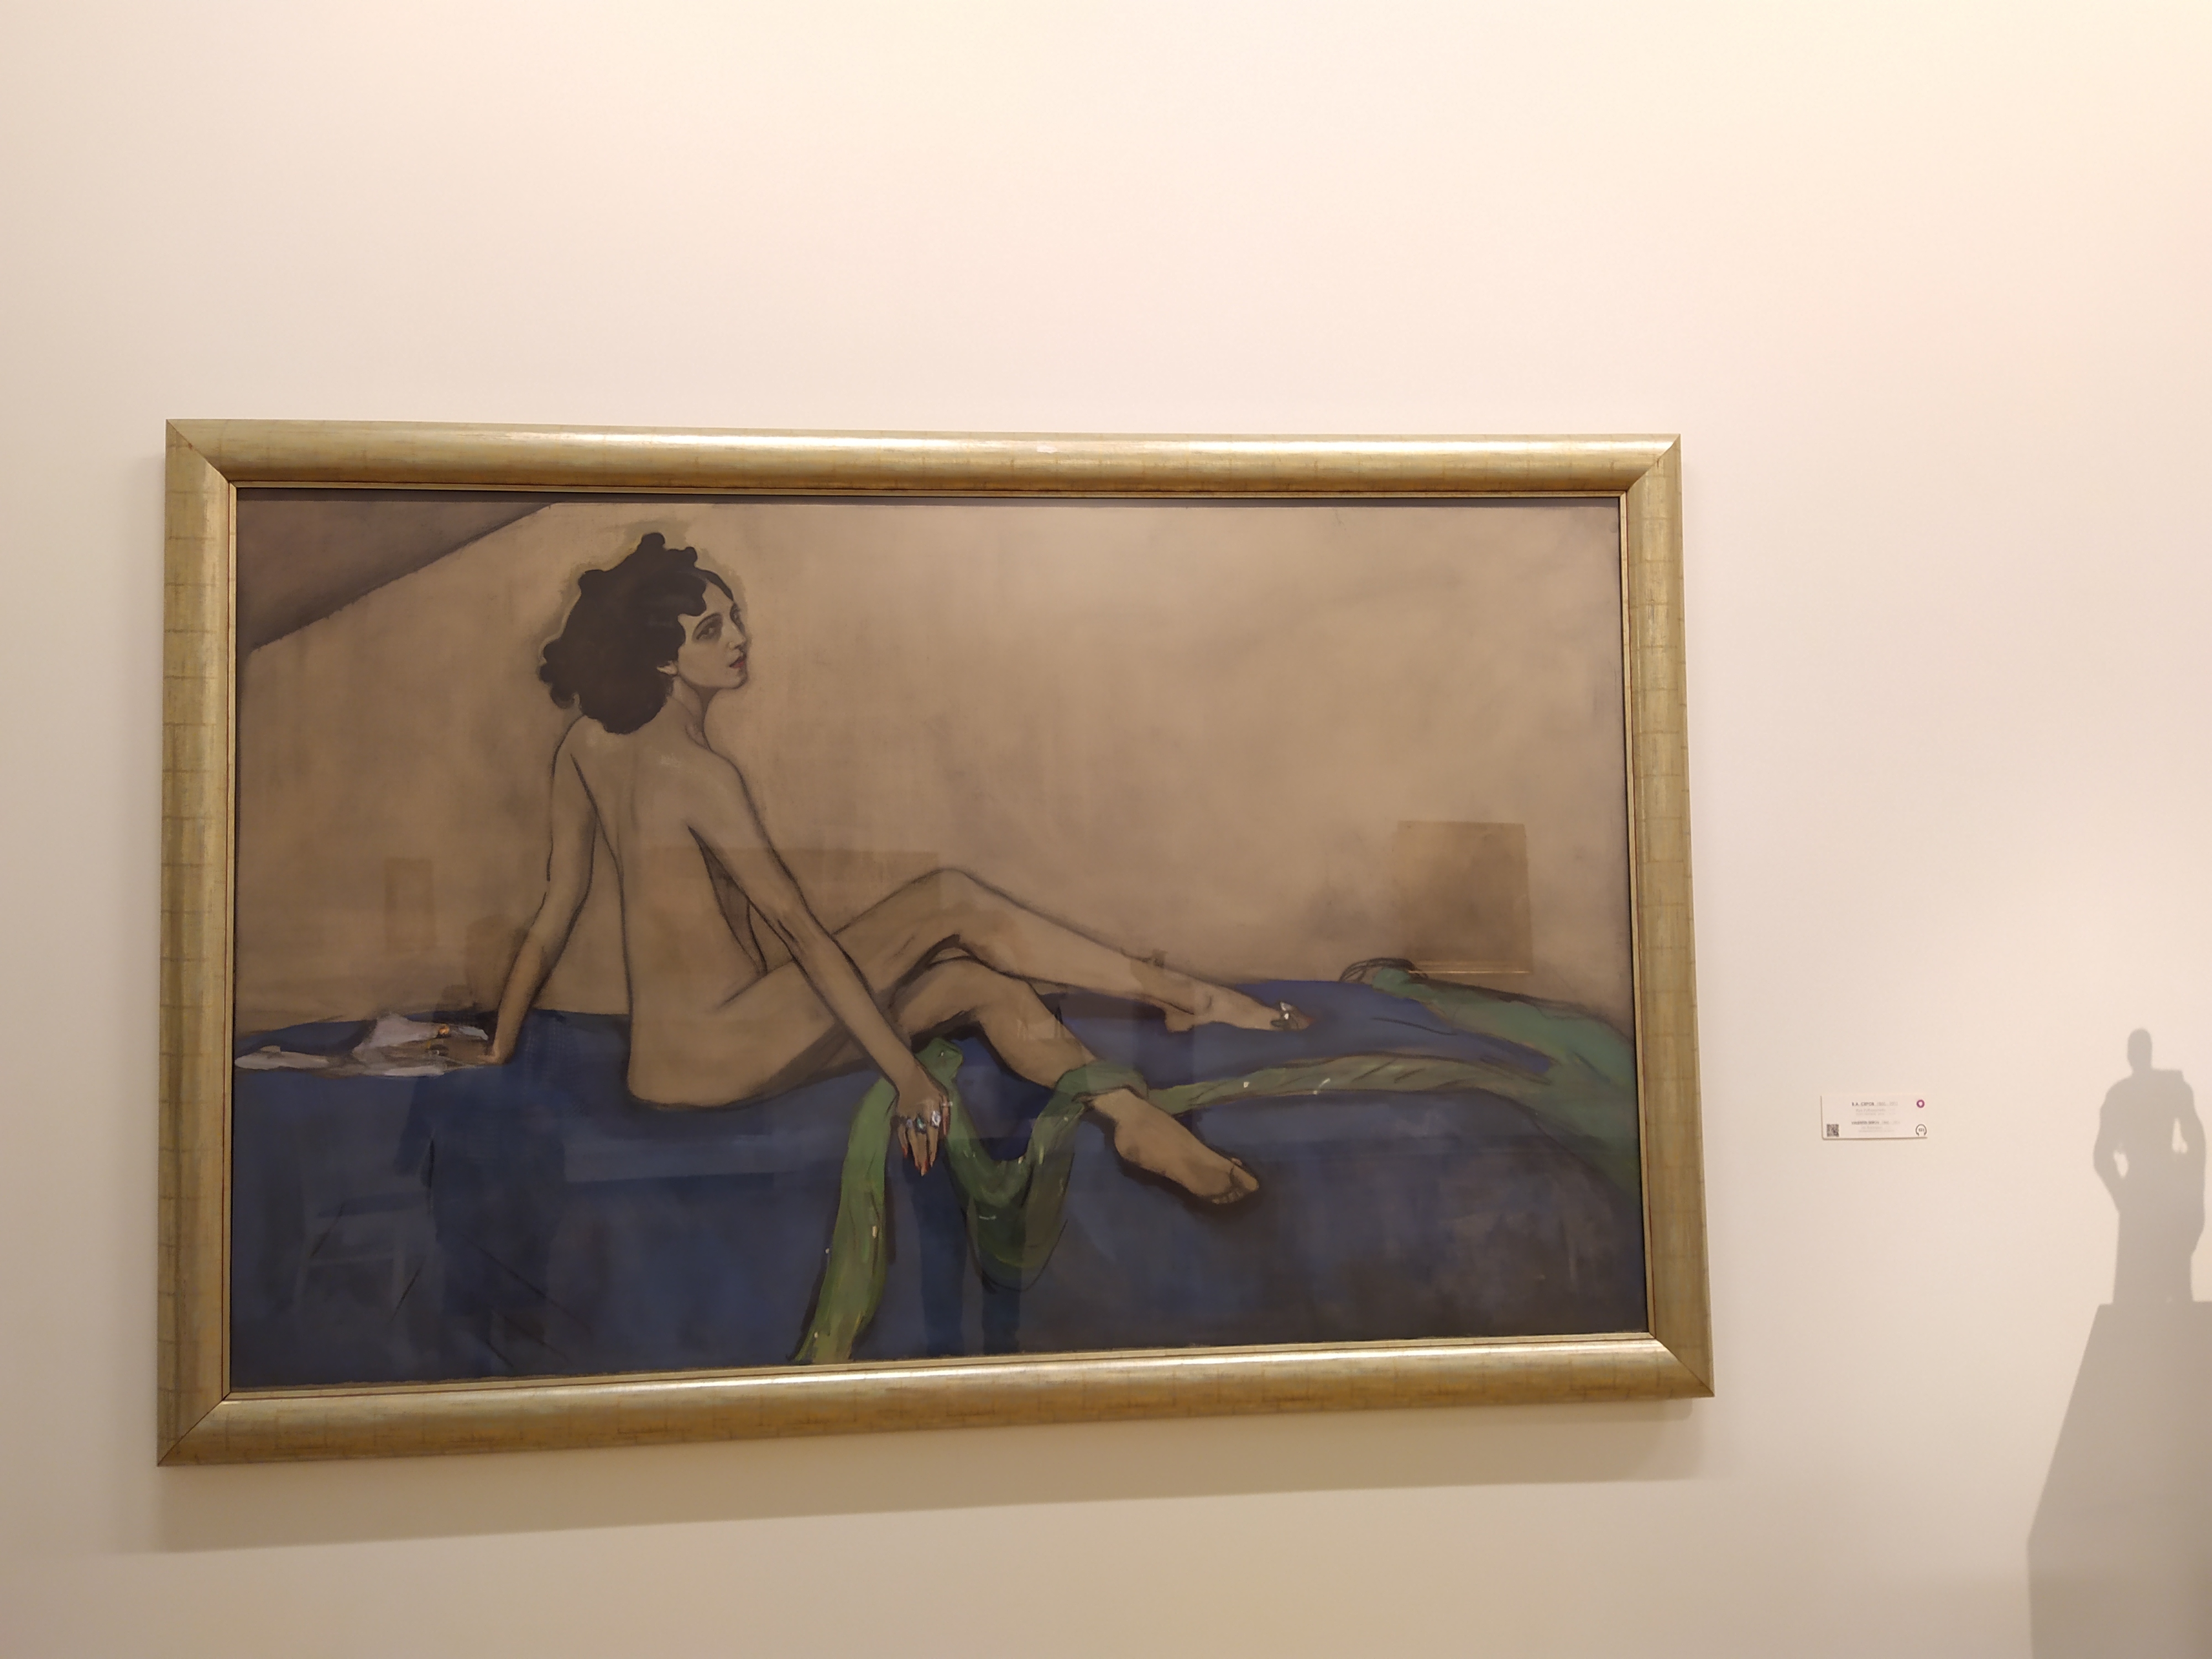 картины серова в русском музее в санкт петербурге